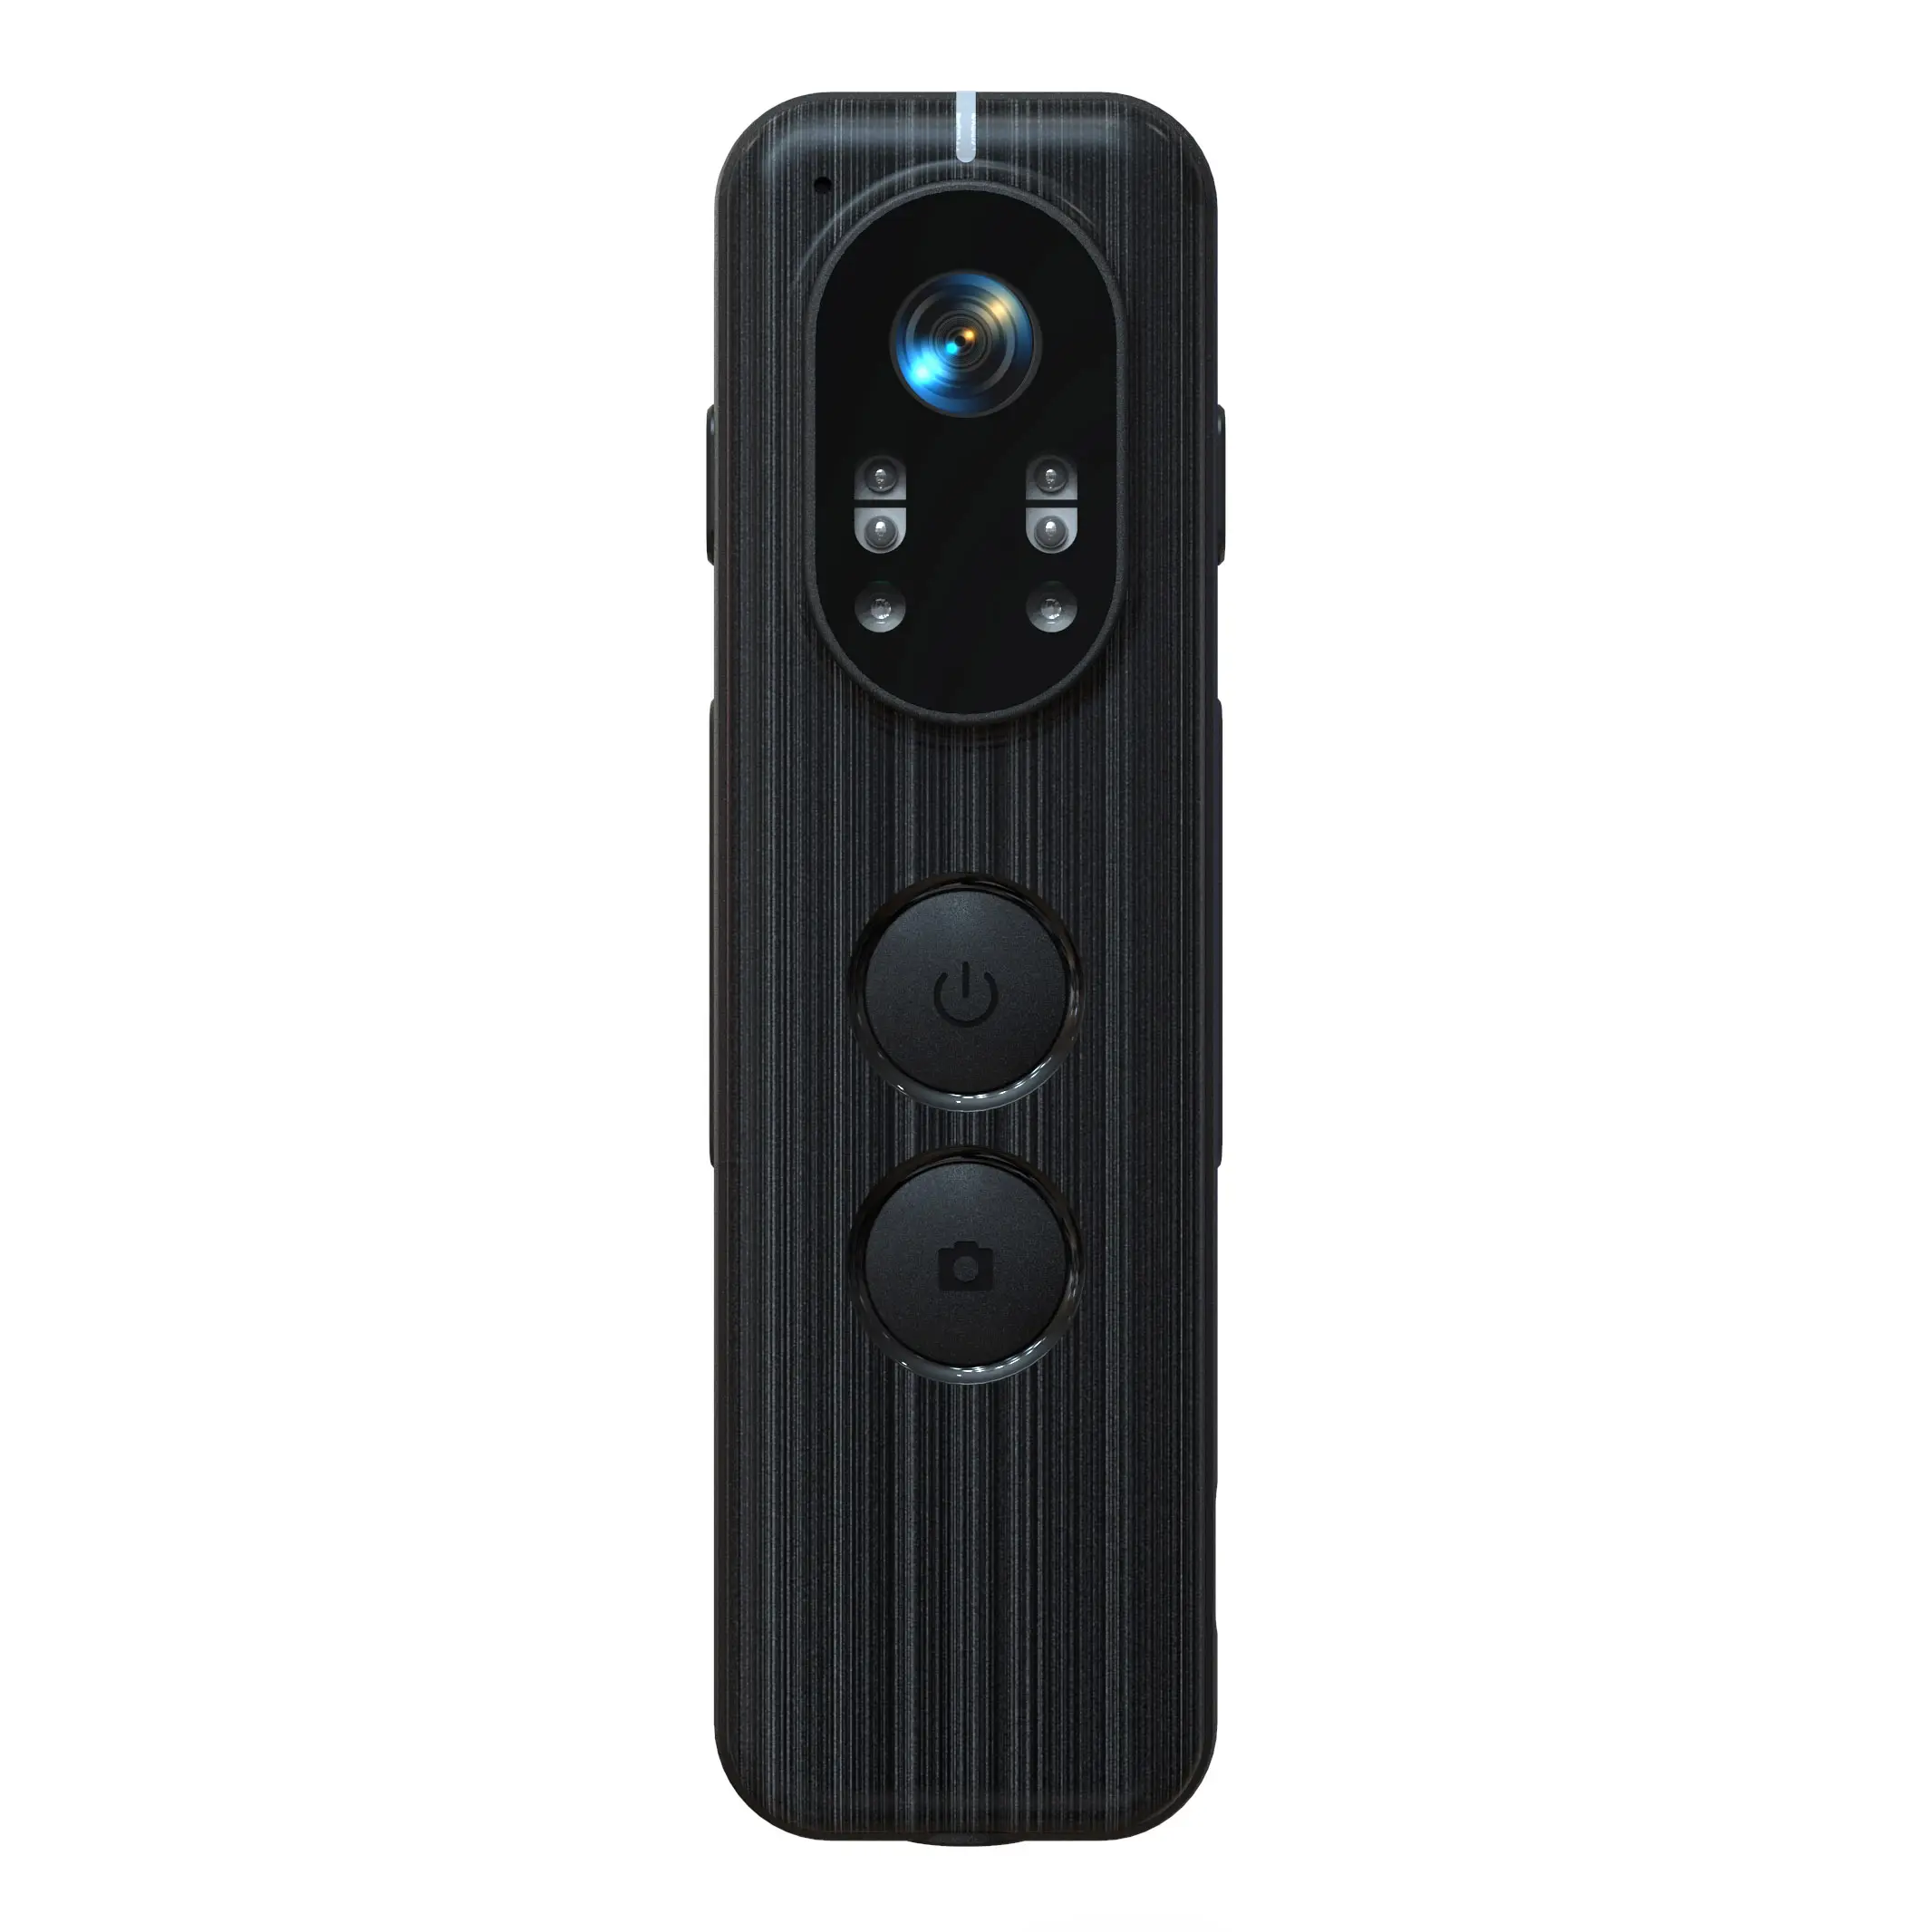 펜 카메라 미니 휴대용 포켓 클립 적외선 나이트 비전 2021 바디 카메라